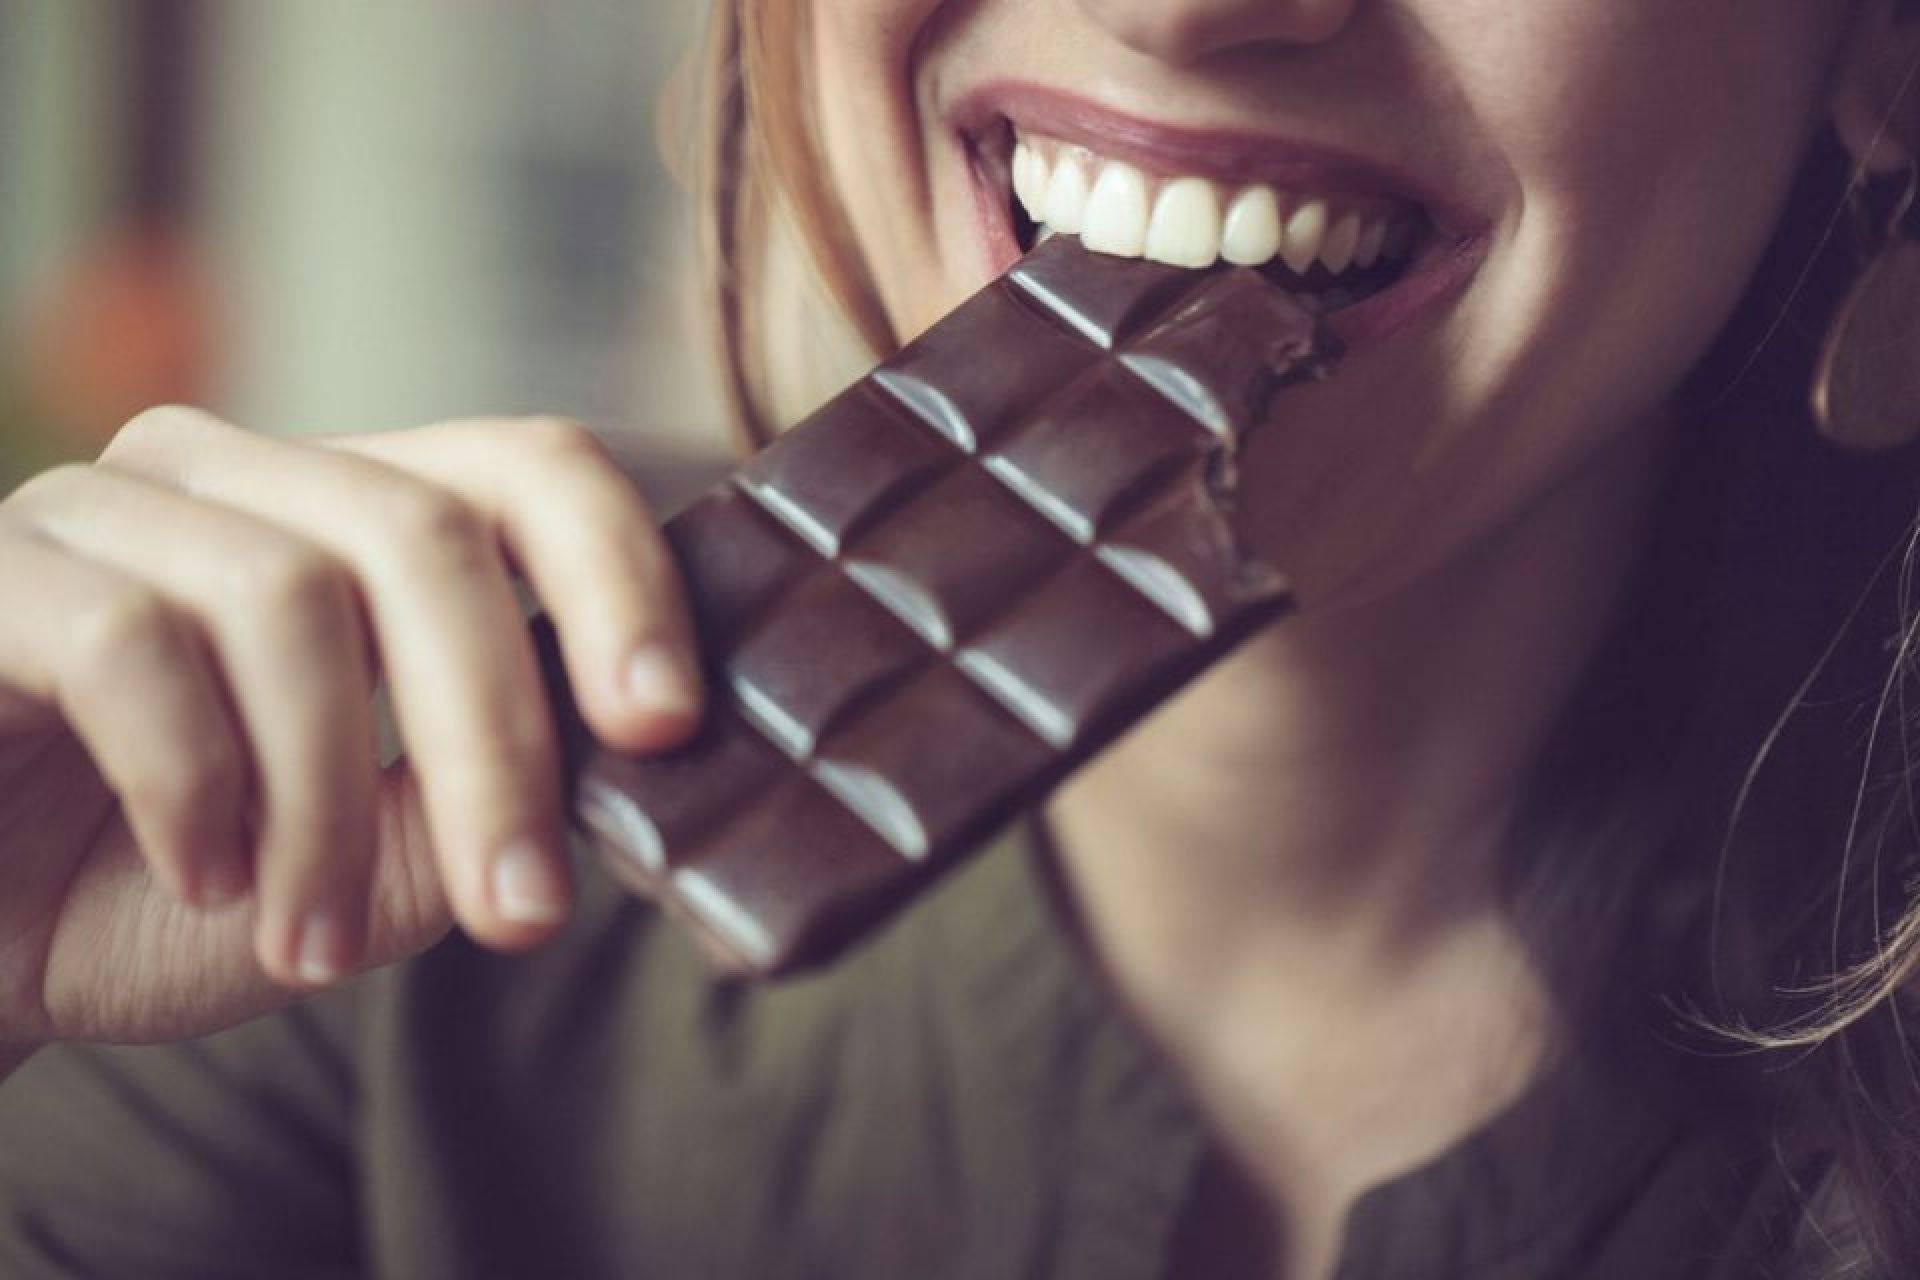 O ΕΦΕΤ ανακαλεί σοκολάτα -Περιέχει αλλεργιογόνα ουσία